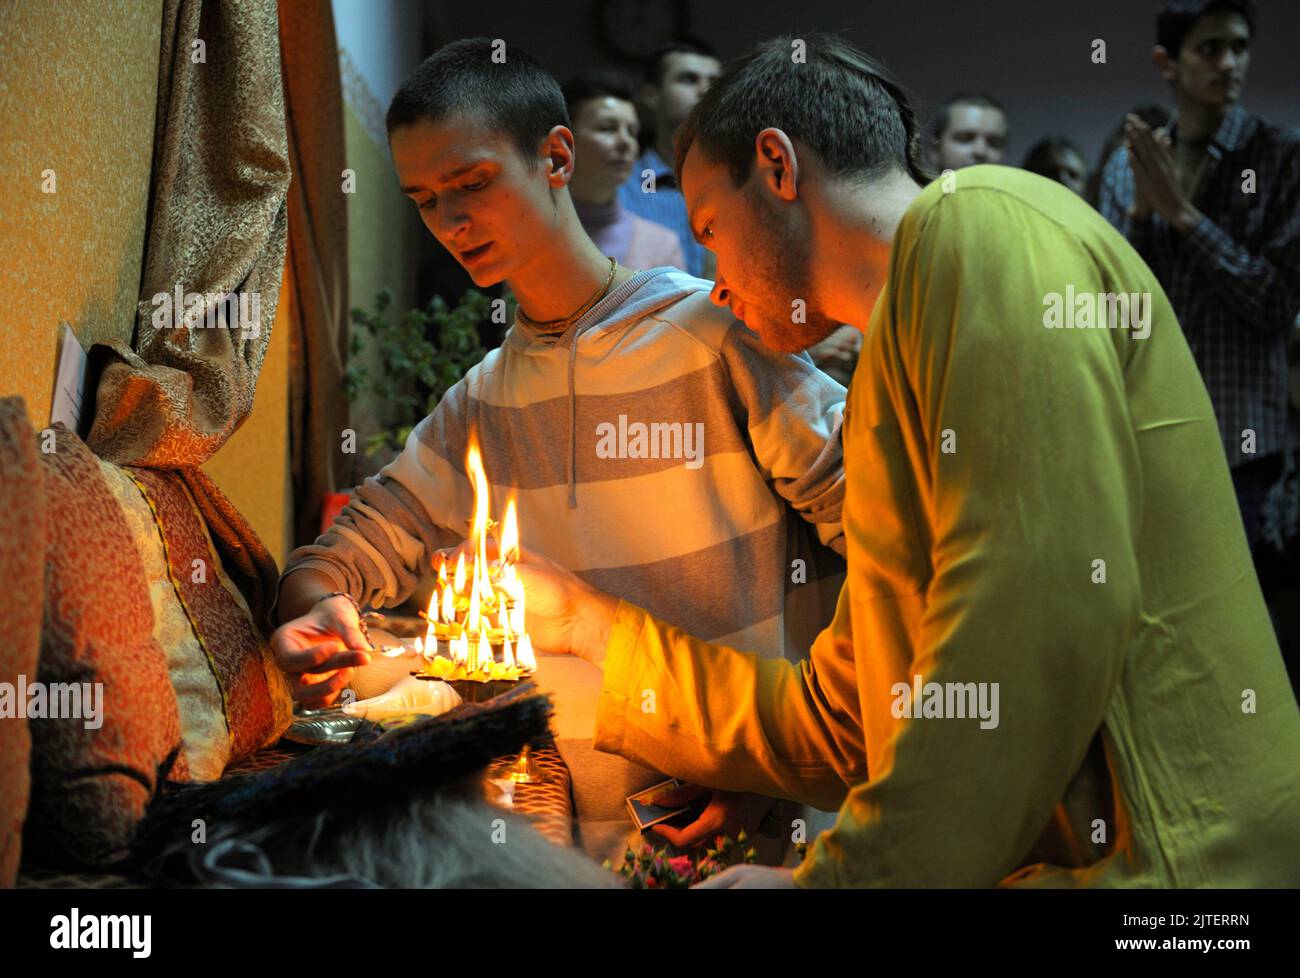 Krishna monks lighting sacred fire in a temple for prayer. Kyiv, Ukraine Stock Photo